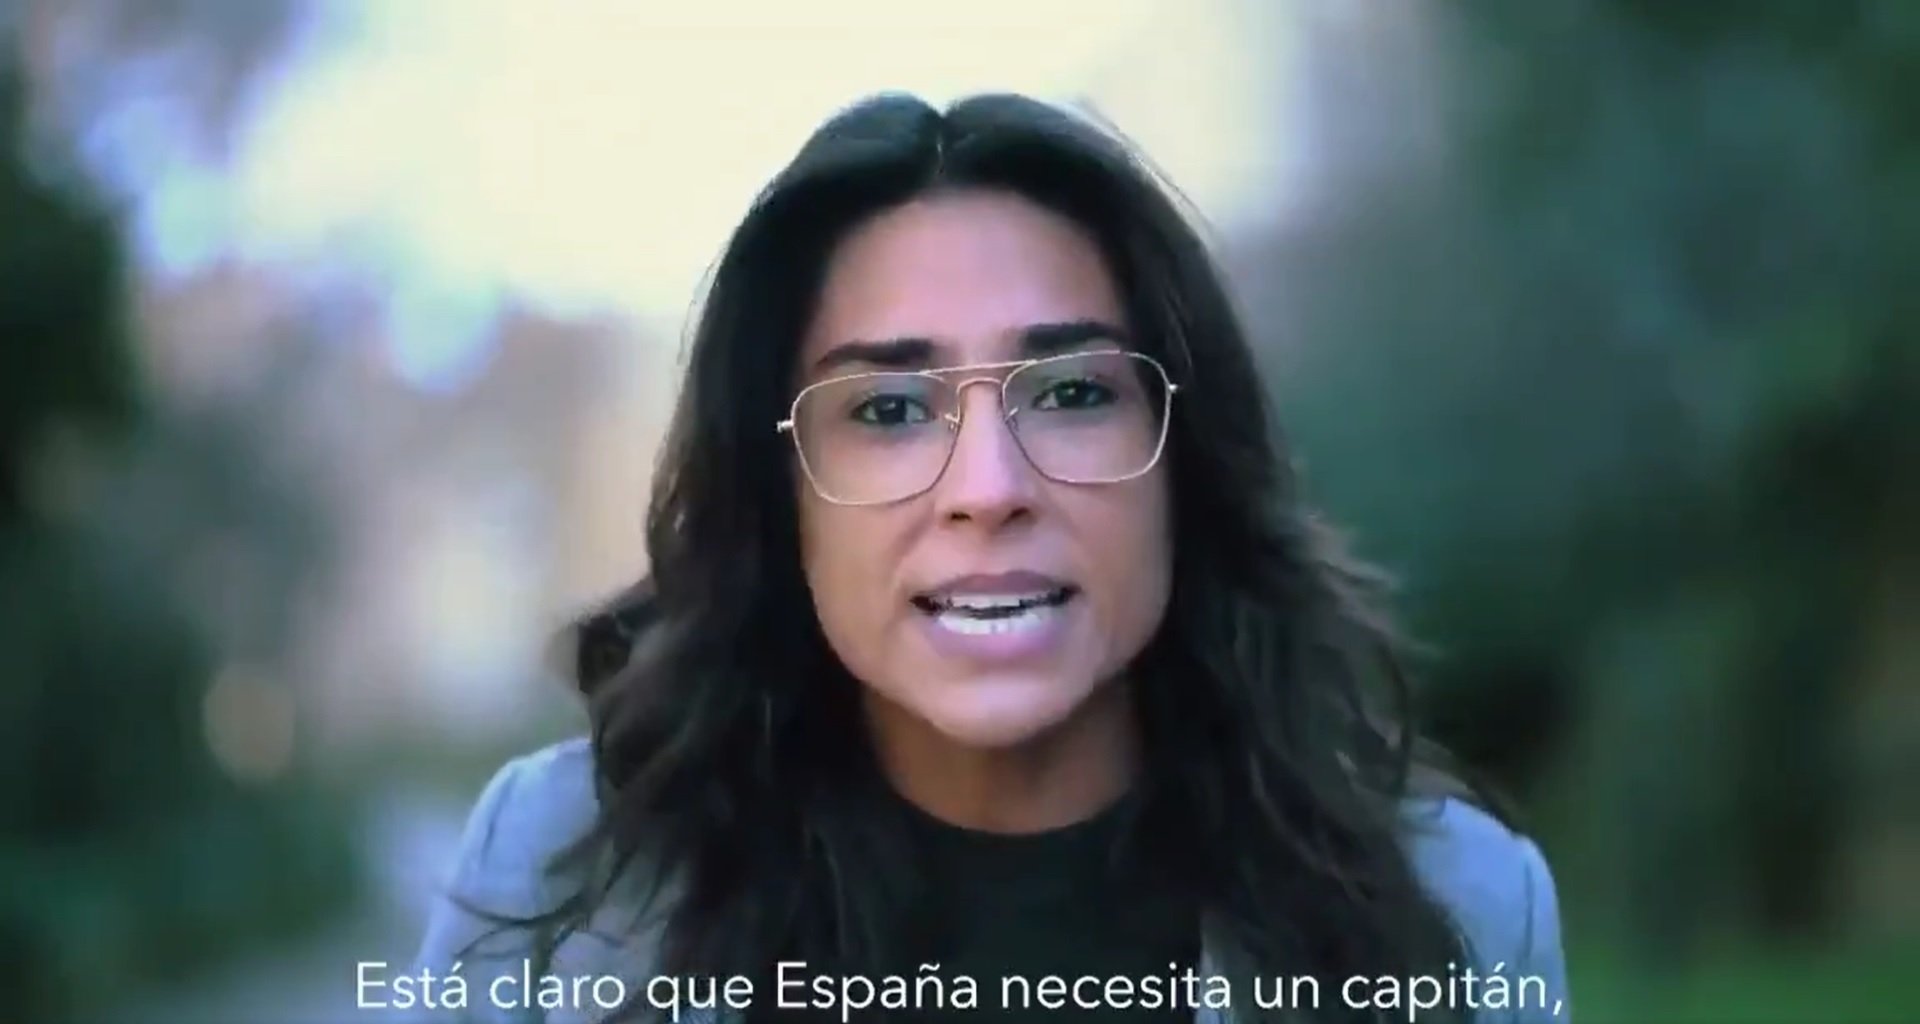 El missatge feixista amagat rere un vídeo viral: "Espanya necessita un capità"